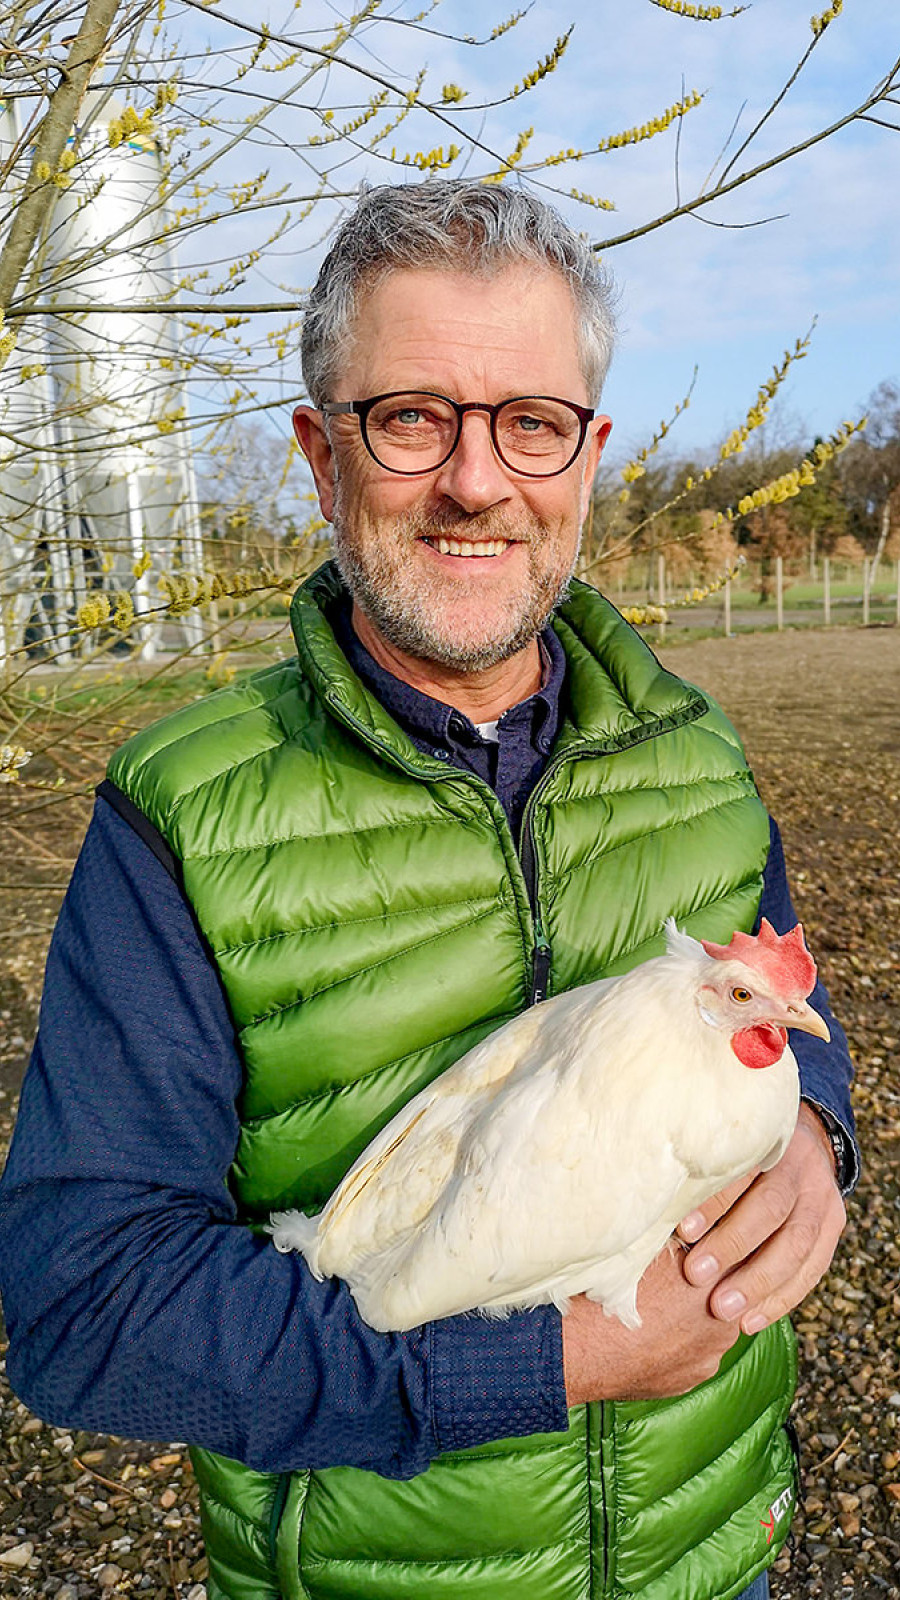 Axel Månssons høns sikrede koncernen 13 mio. kr. til bundlinjen efter et år, hvor grøntsagssalget gik i rødt, mens investeringen i biogas gav et solidt afkast